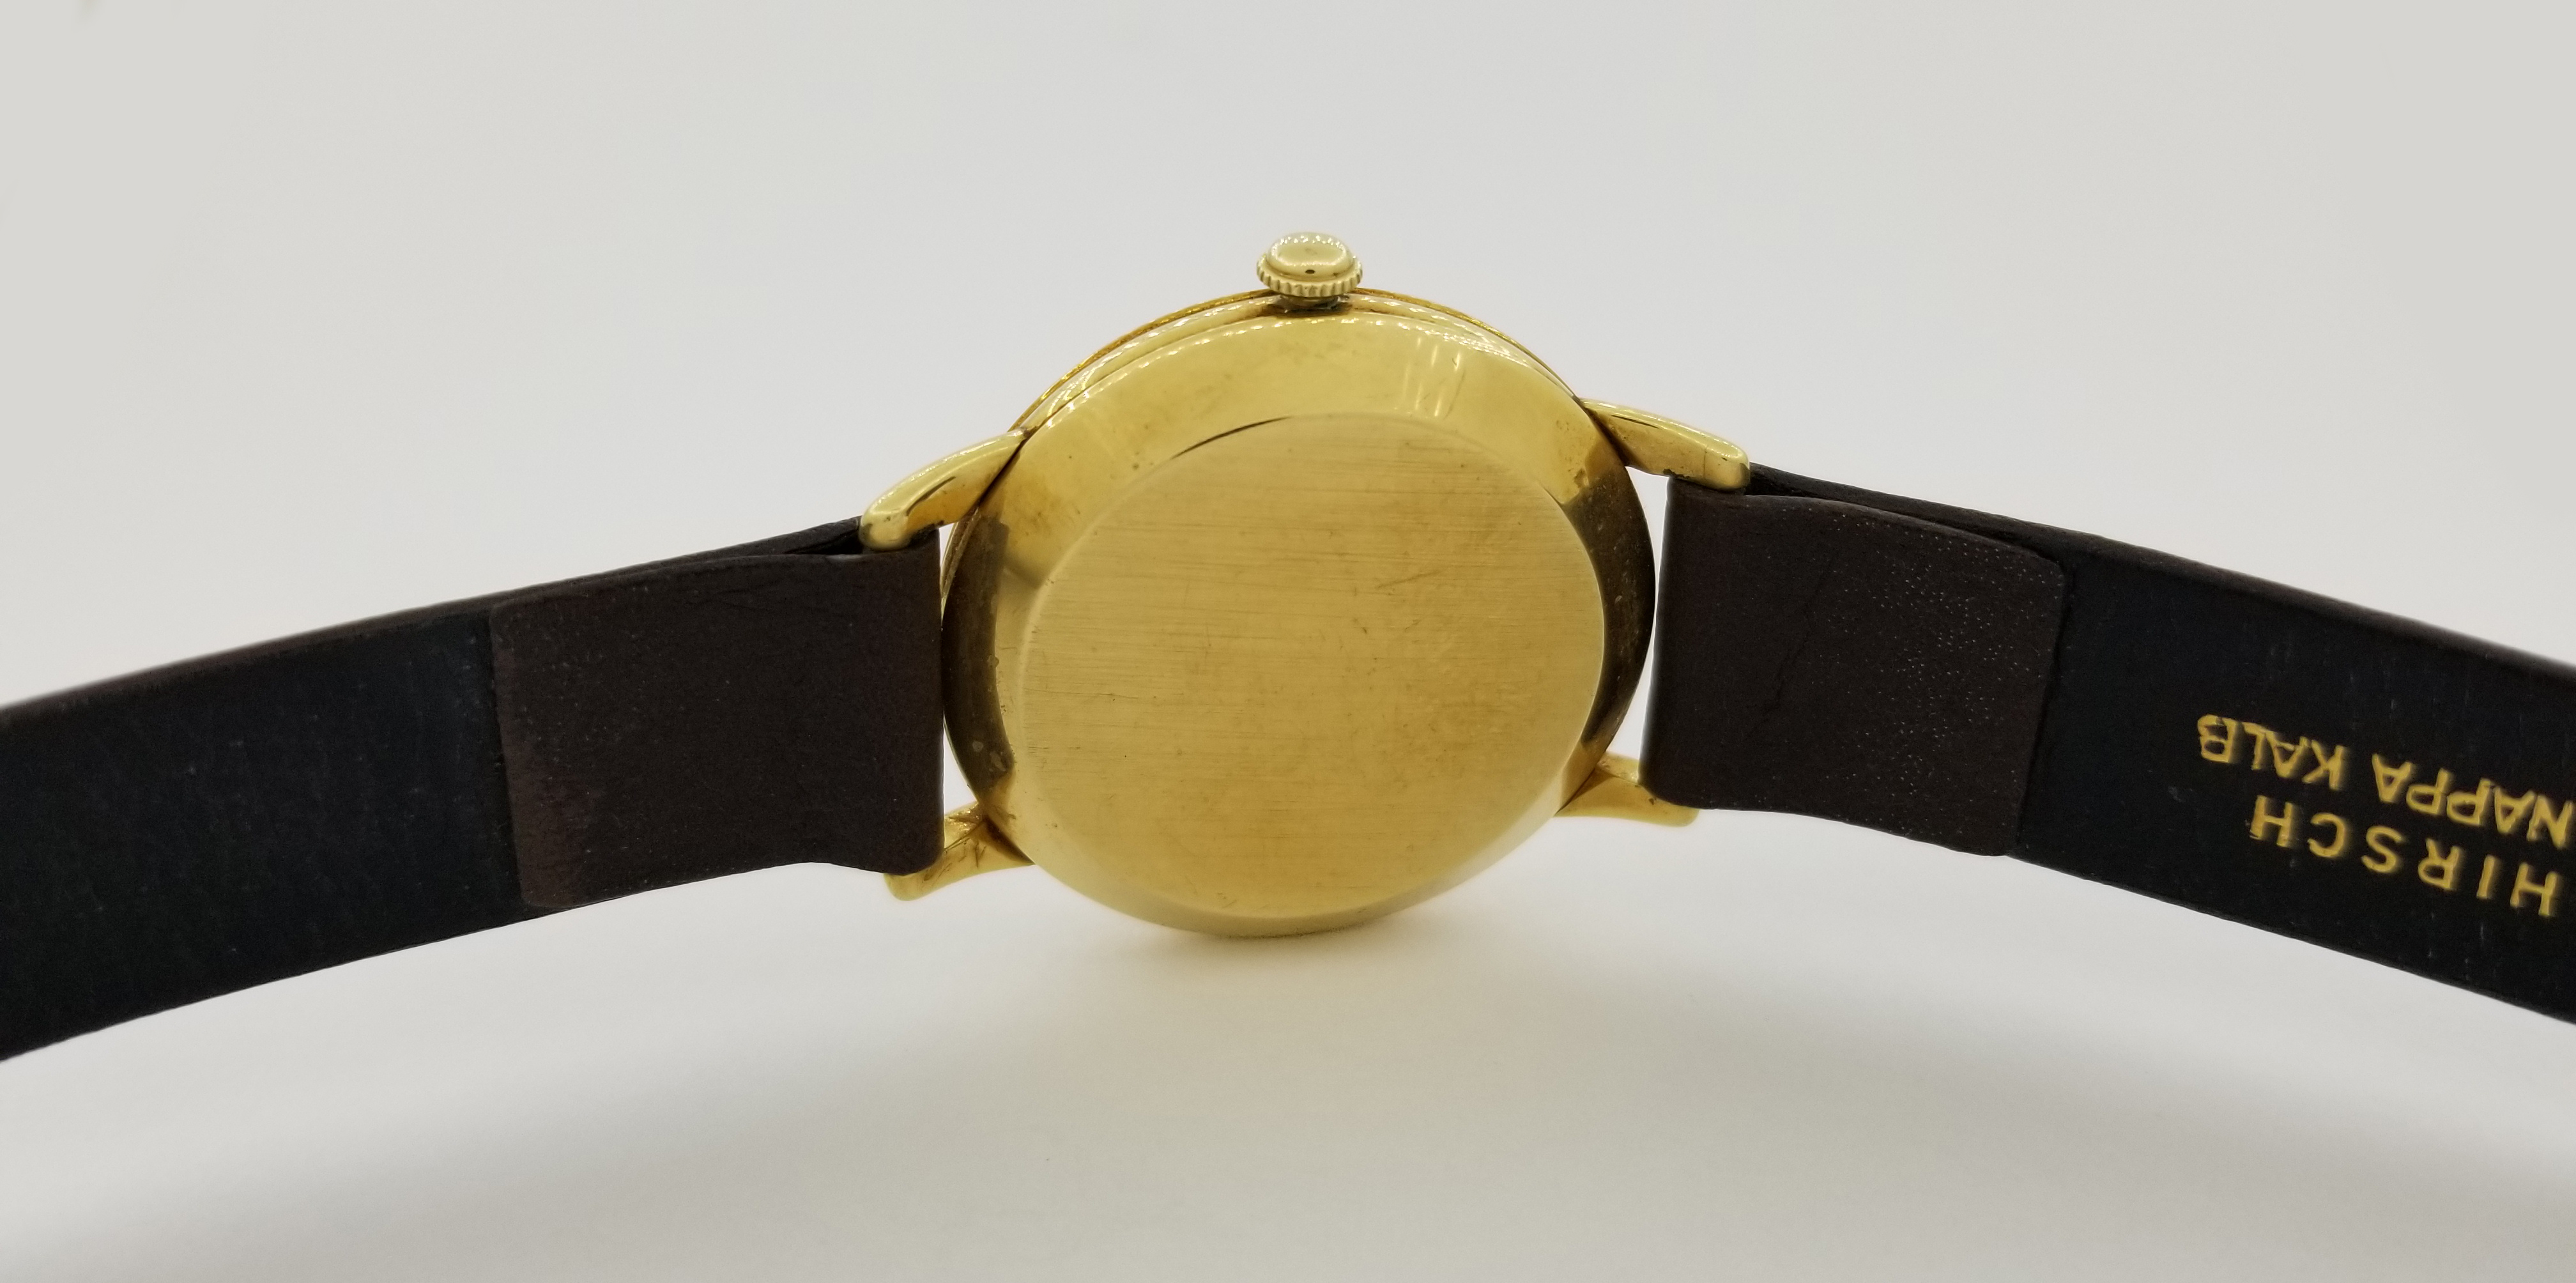 Vintage 14K Gold Omega Watch - Image 4 of 8